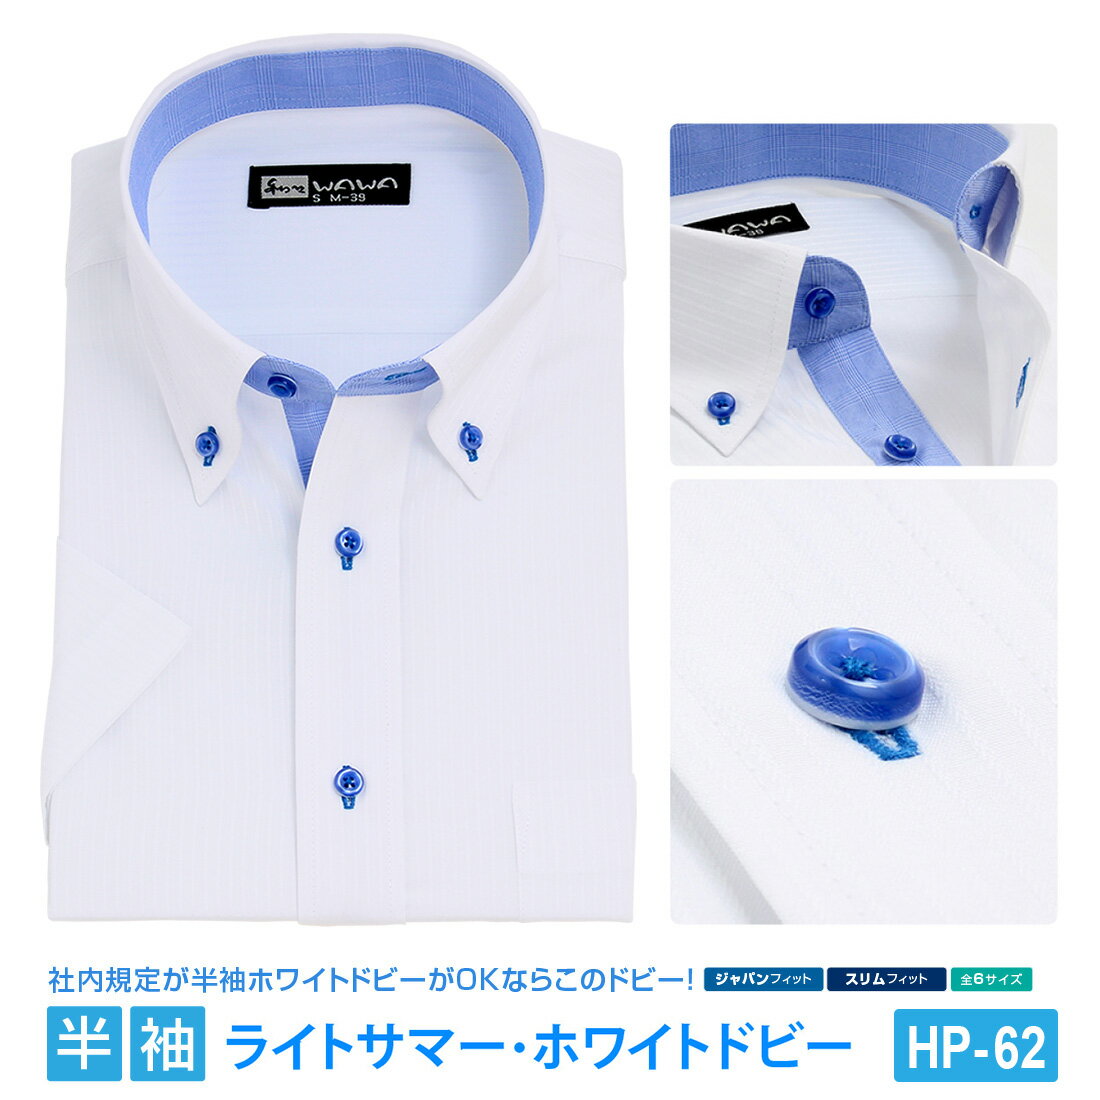 半袖ワイシャツ 半袖 メンズ ドビー ホワイト ワイシャツ ボタンダウン 形態安定 白 Yシャツ ビジネス 6サイズ スリム M L 標準体 M L LL 3L から選べる HP-62